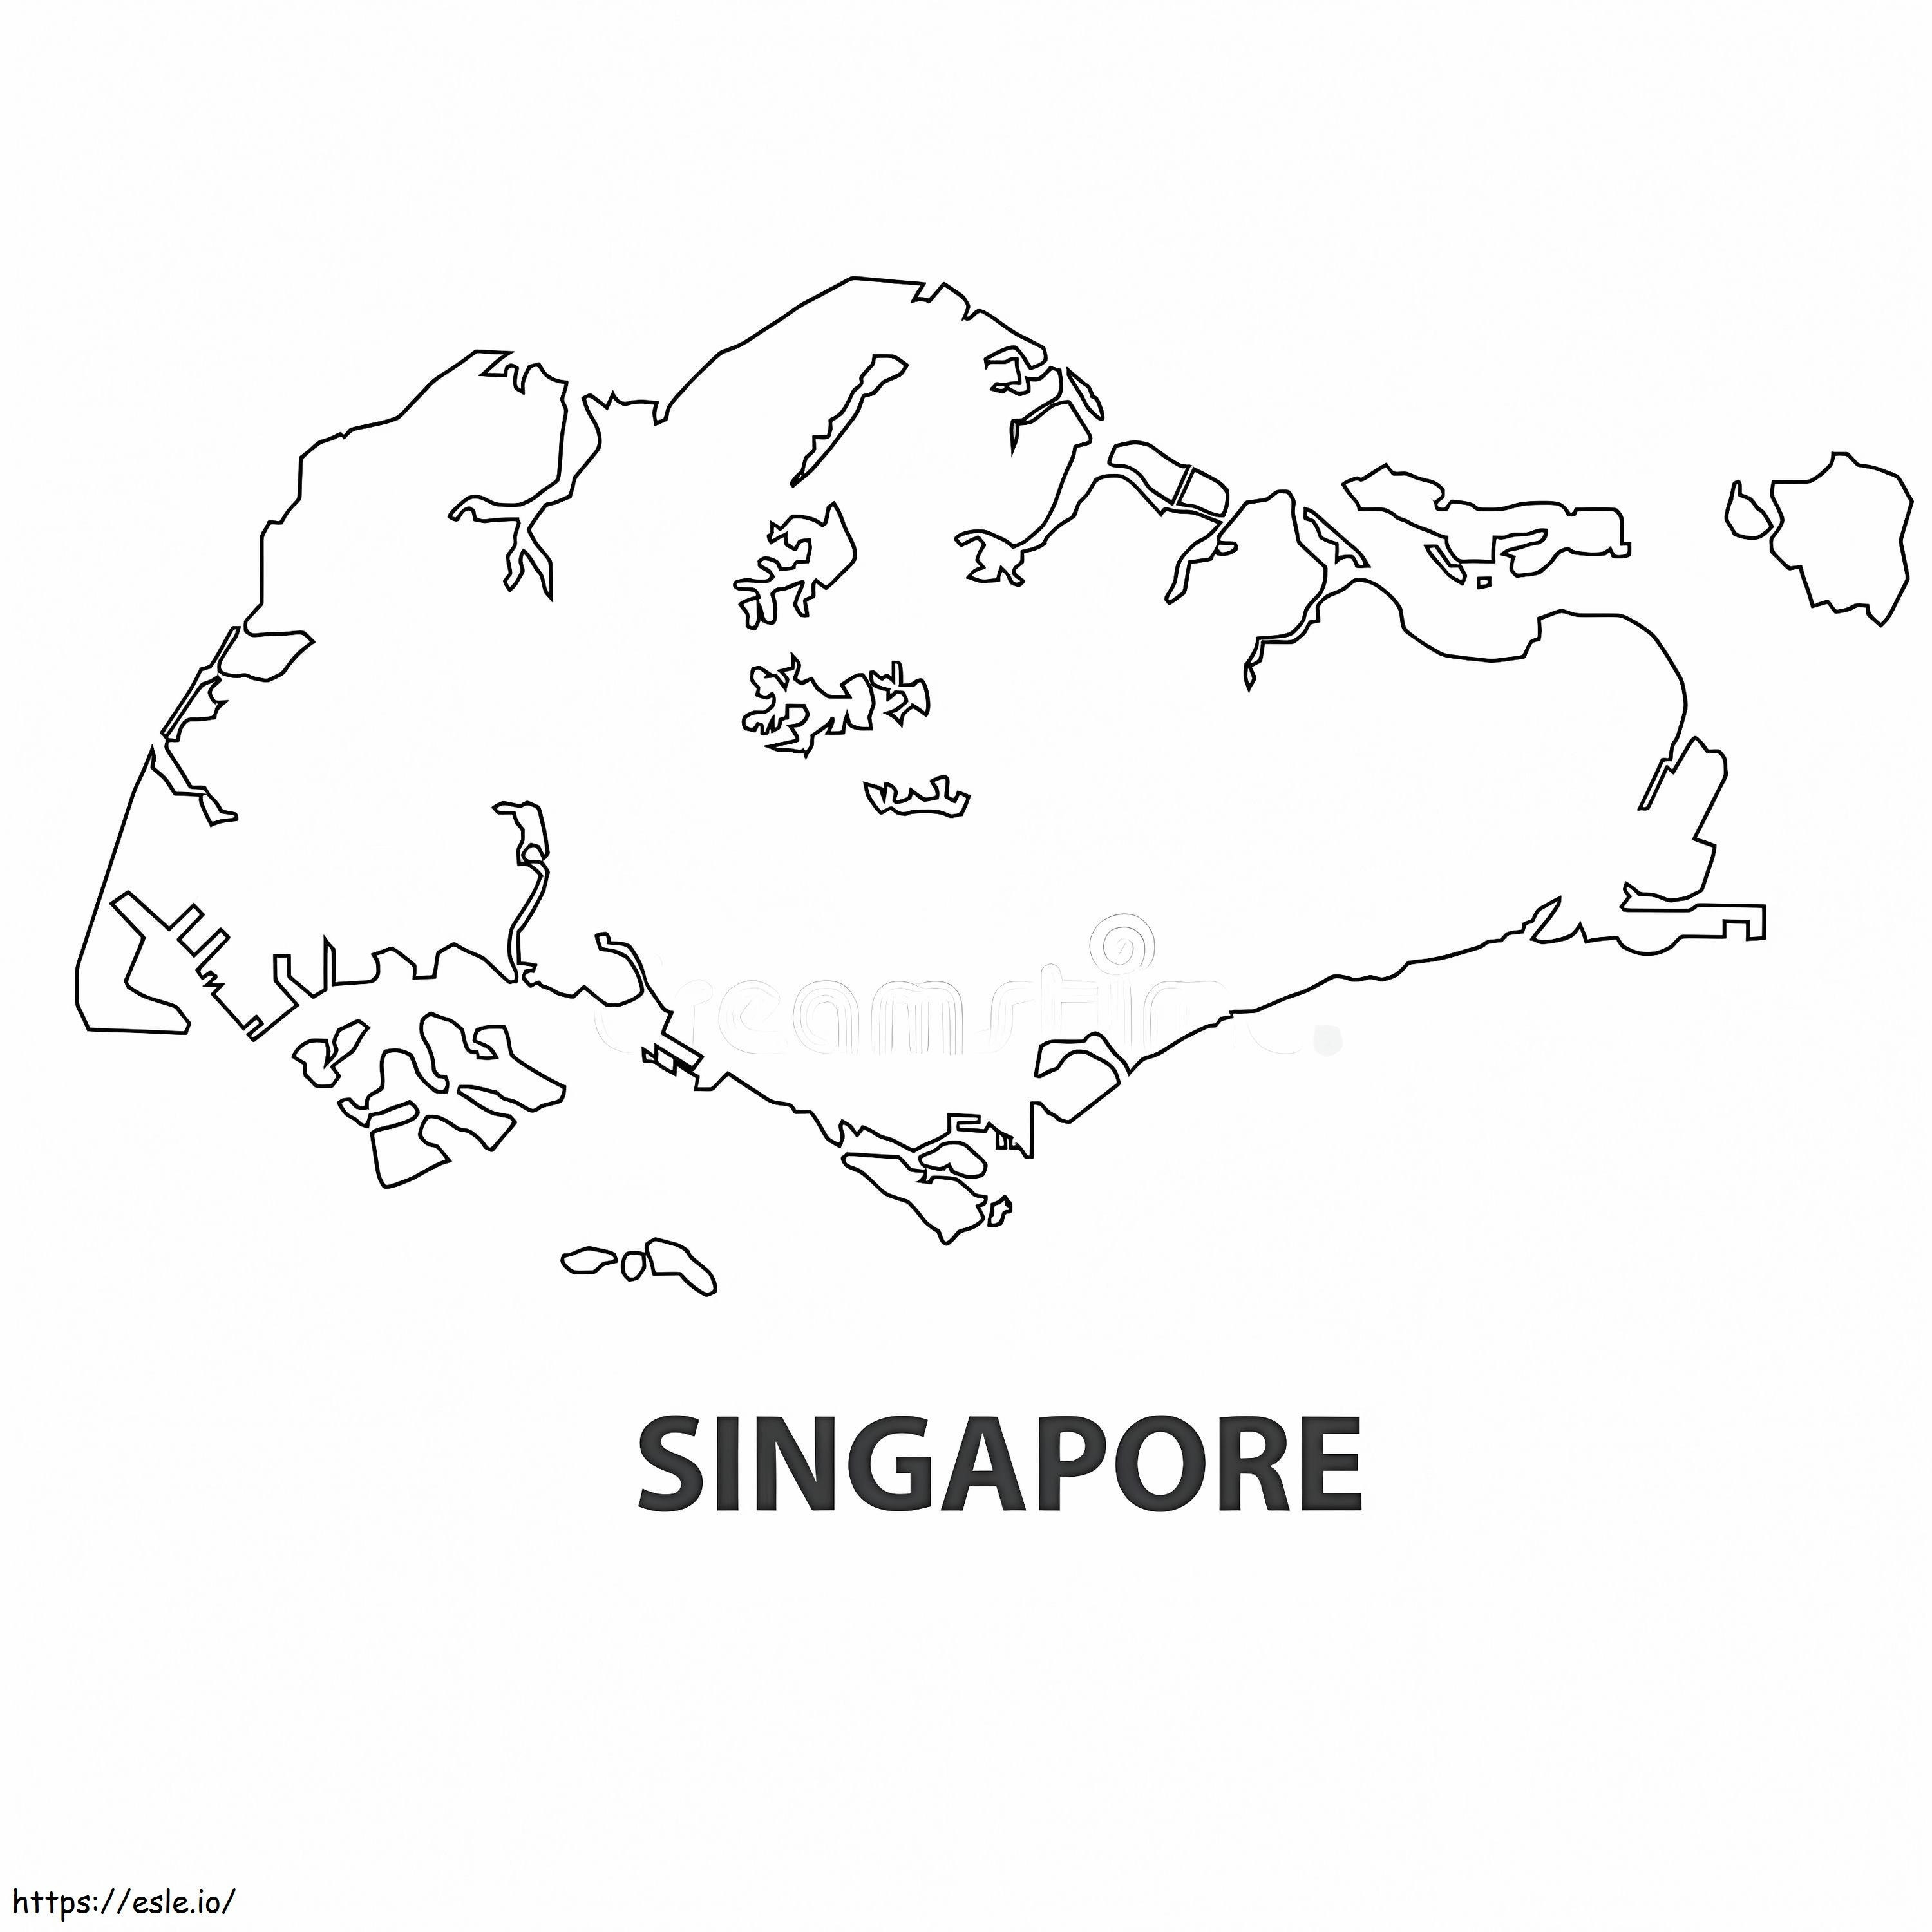 Singapore kaart kleurplaat kleurplaat kleurplaat